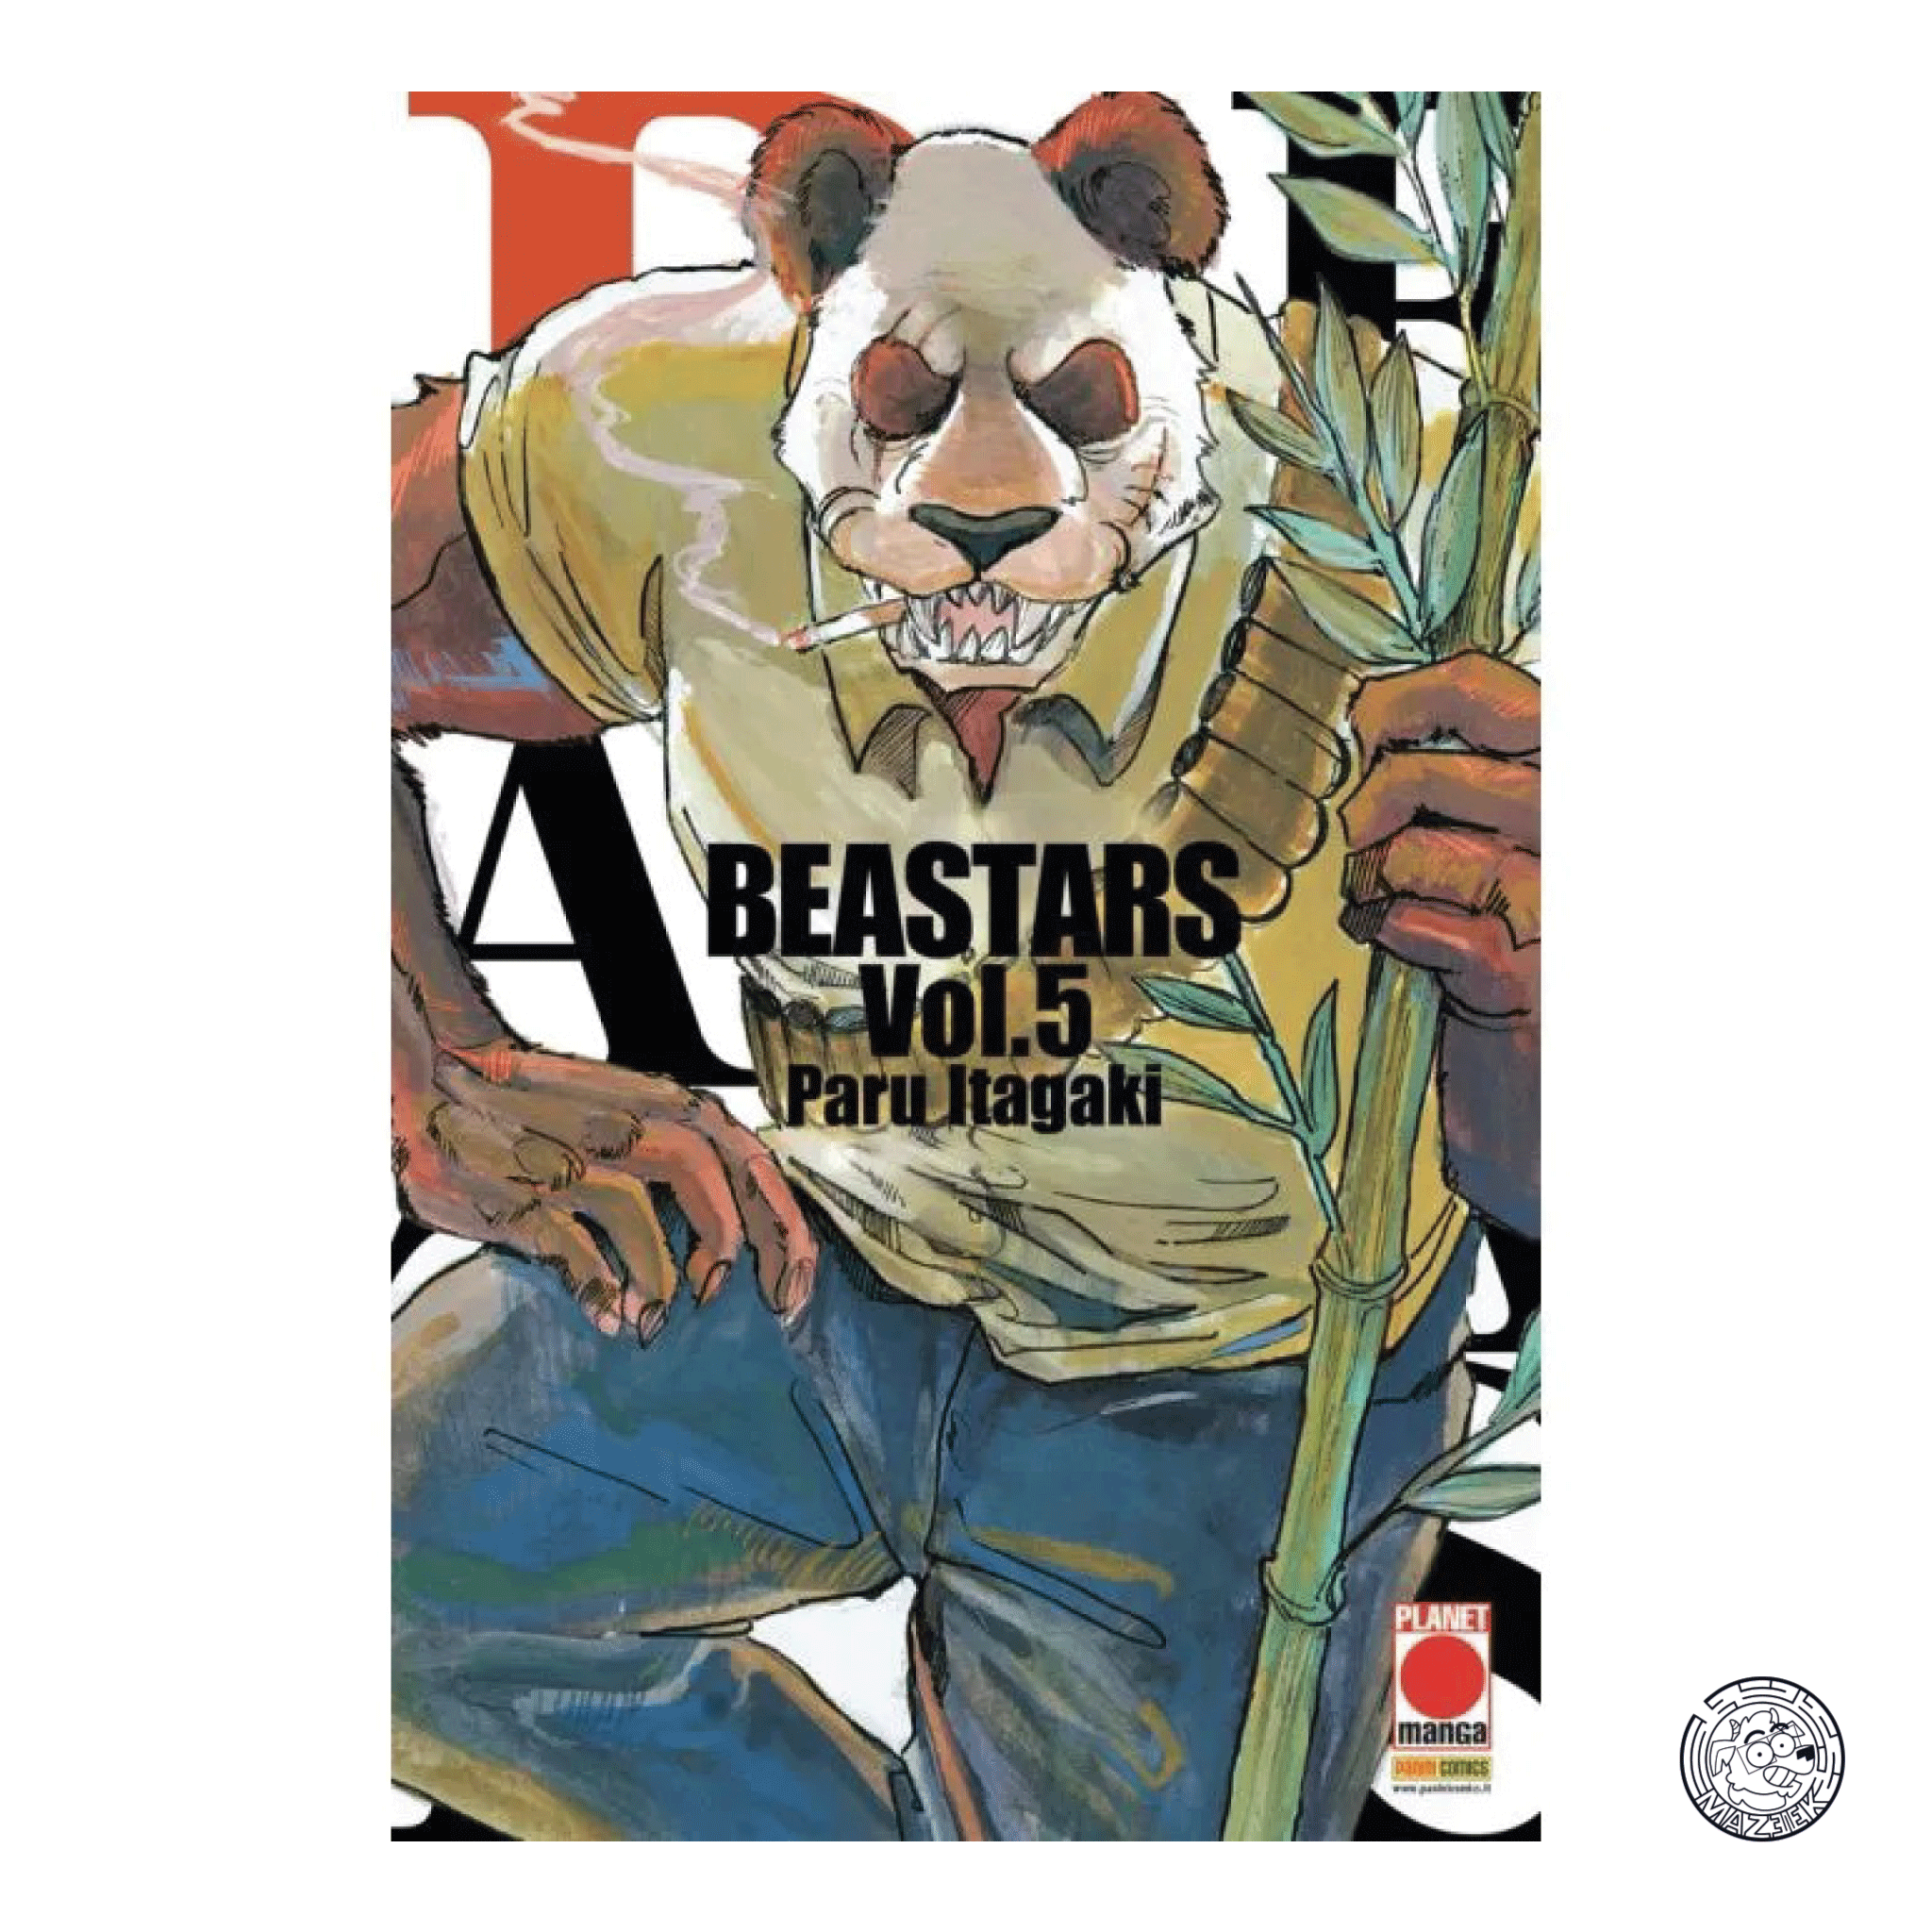 Beastars 05 - Reprint 1